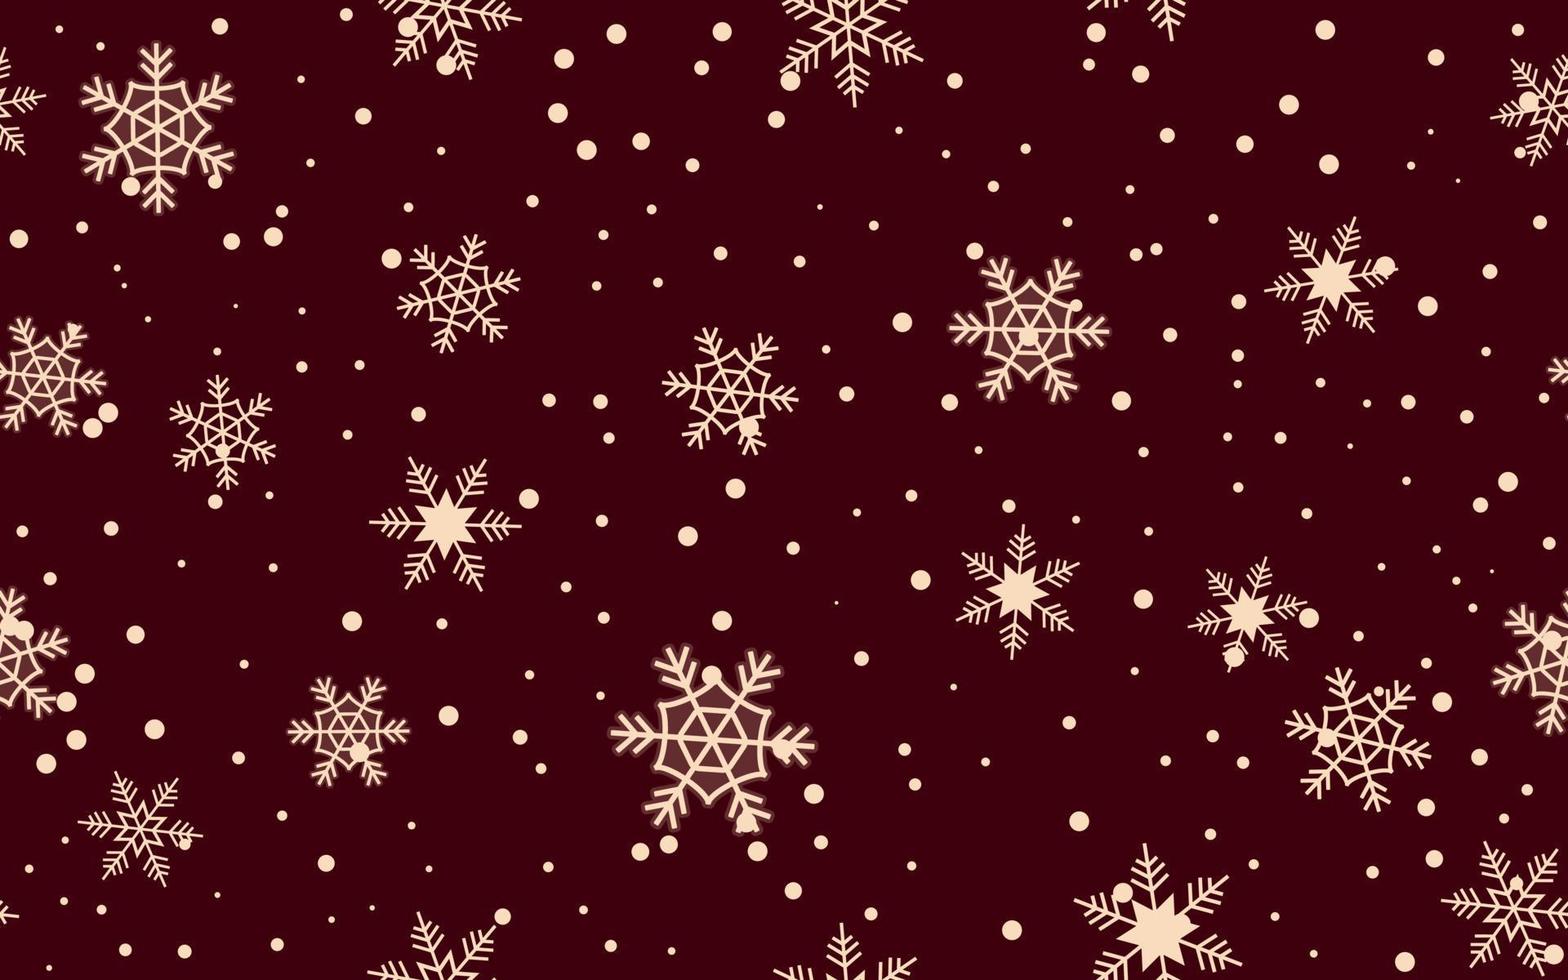 Fondo de Navidad simple creado con copos de nieve y nevadas como objetos, ilustración de vector de banner de Navidad, banner de ventas de Navidad.